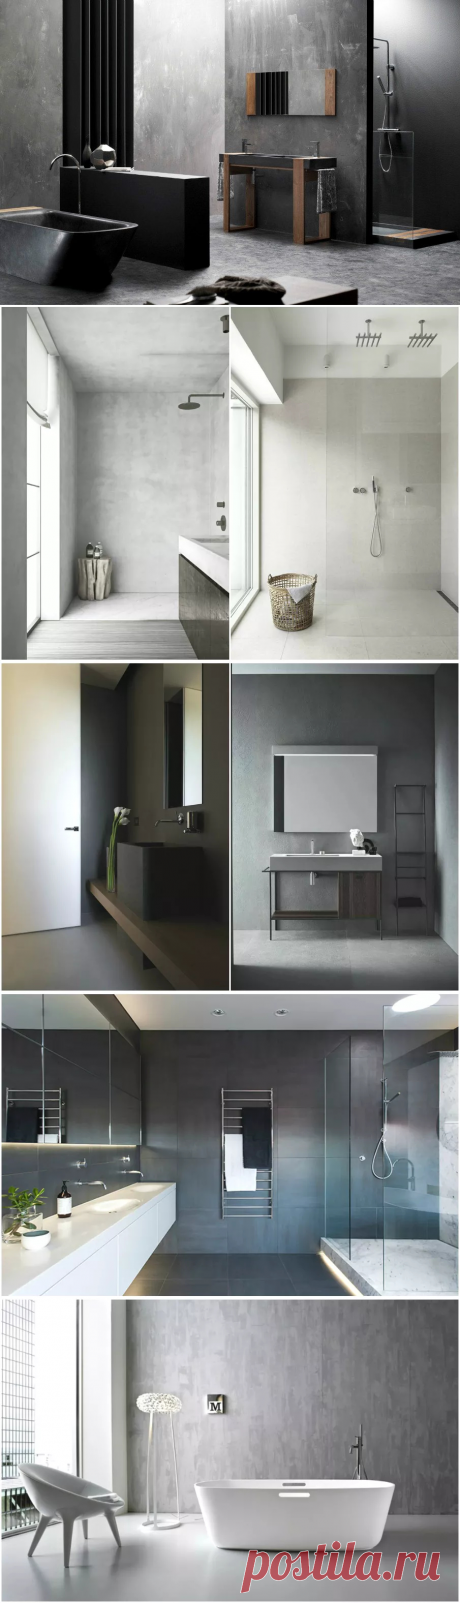 Ванная комната в стиле минимализм: тонкая грань лаконичности | Ivybush